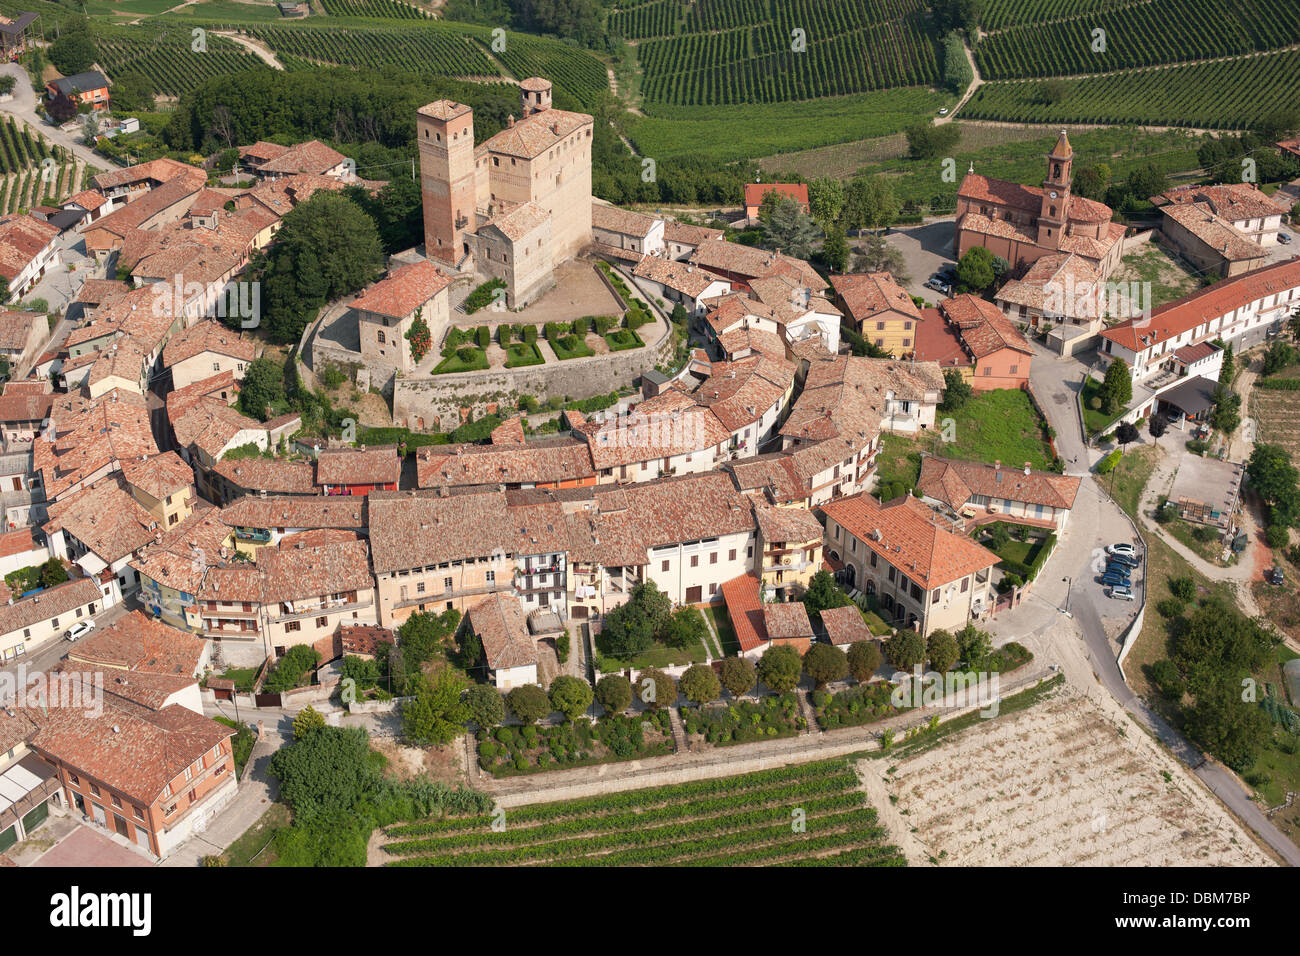 VISTA AEREA. Castello medievale in cima a una collina circondato da vigneti nella regione delle Langhe. Serralunga d'Alba, Provincia di Cuneo, Piemonte, Italia. Foto Stock